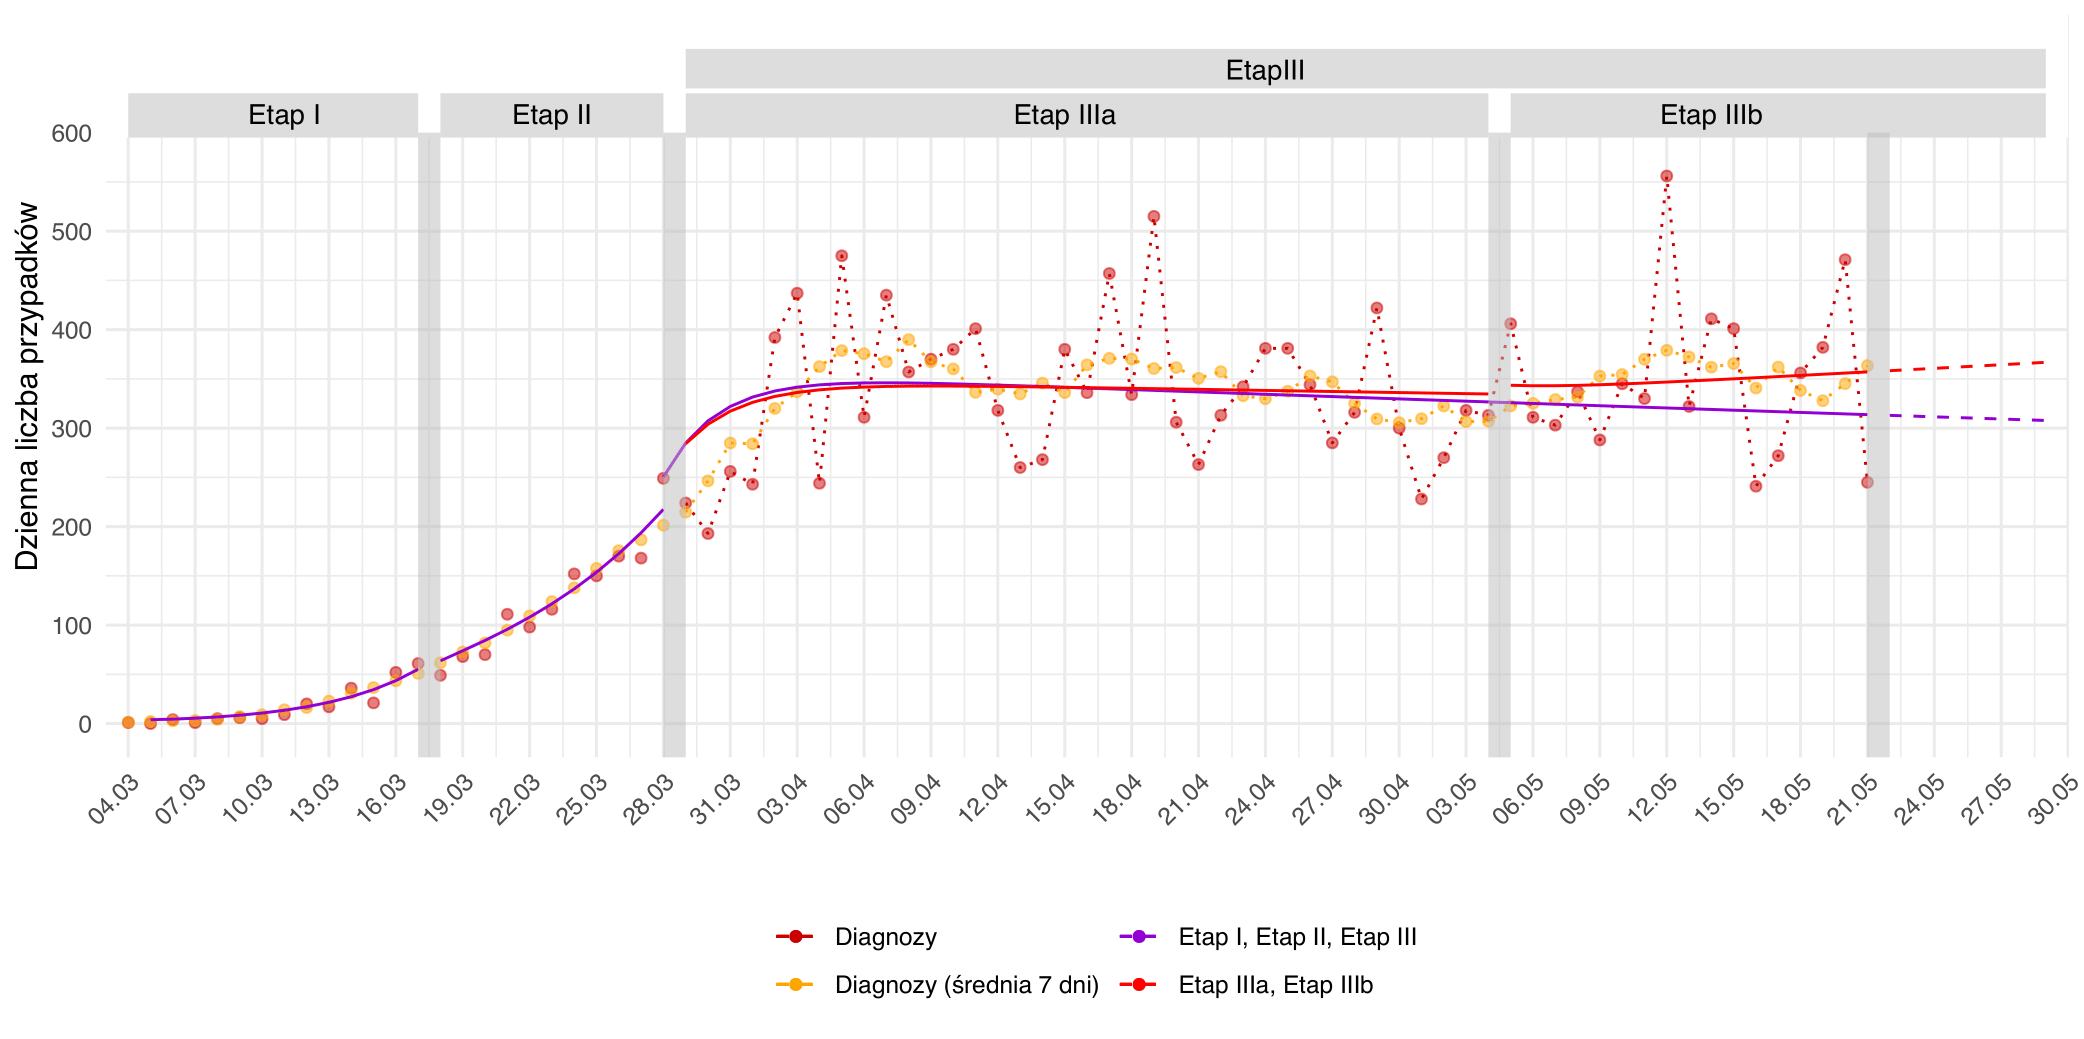 Prognozowana dzienna liczba przypadków na kolejnych etapach epidemii. Czerwone punkty odpowiadają dziennej liczbie diagnozowanych przypadków. Punkty pomarańczowe są średnią na dany dzień w tygodniowym oknie czasowym. Czerwona ciągła linia obrazuje przebieg predykcji dla trzech etapów epidemii w Polsce, ograniczonymi przez pionowe szare pasy odpowiadające wprowadzeniu lub zdjęciu restrykcji. Dla rozróżnienia etapów IIIa i IIIb fioletową linią zaznaczono predykcje z uwzględnieniem pierwszej fazy znoszenia restrykcji.